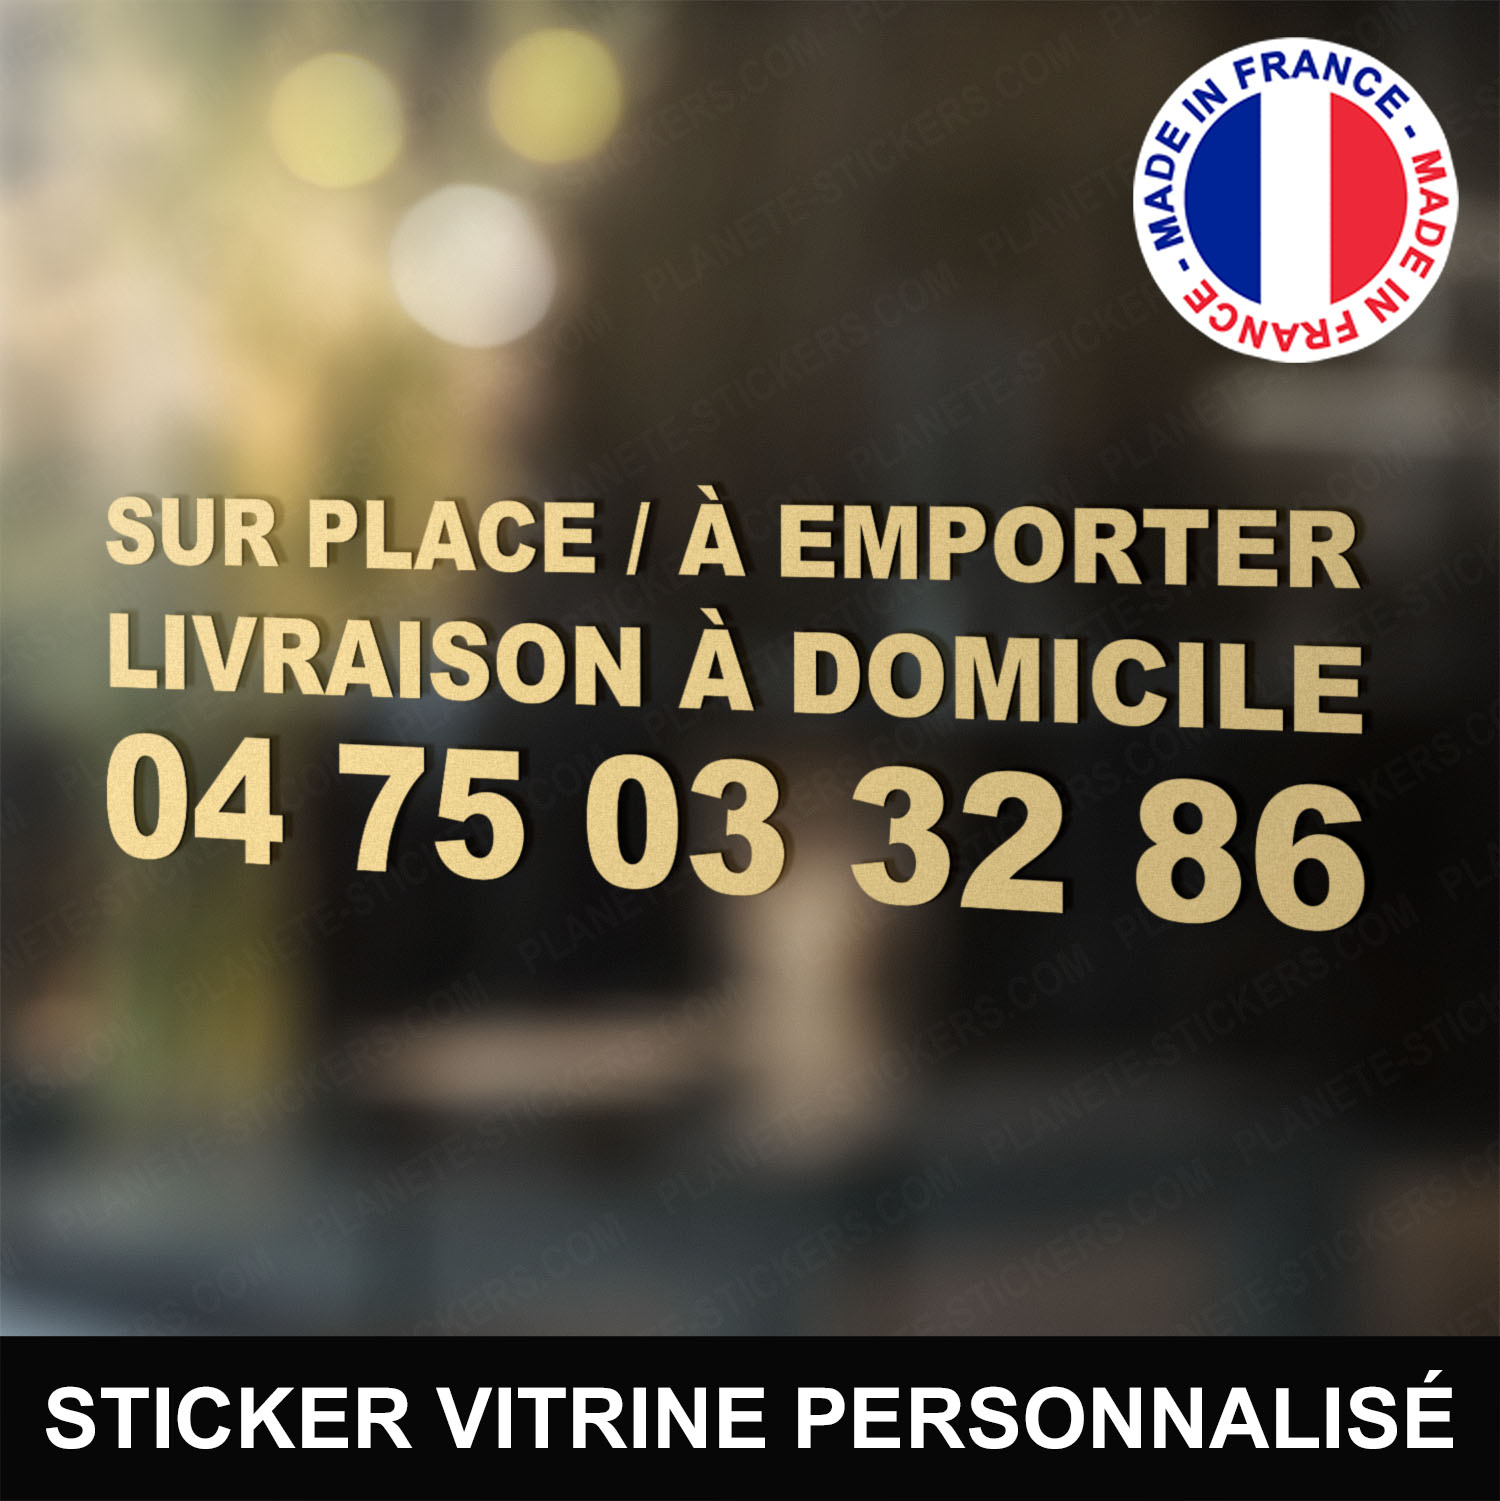 Stickers sur place à emporter livraison téléphone personnalisé